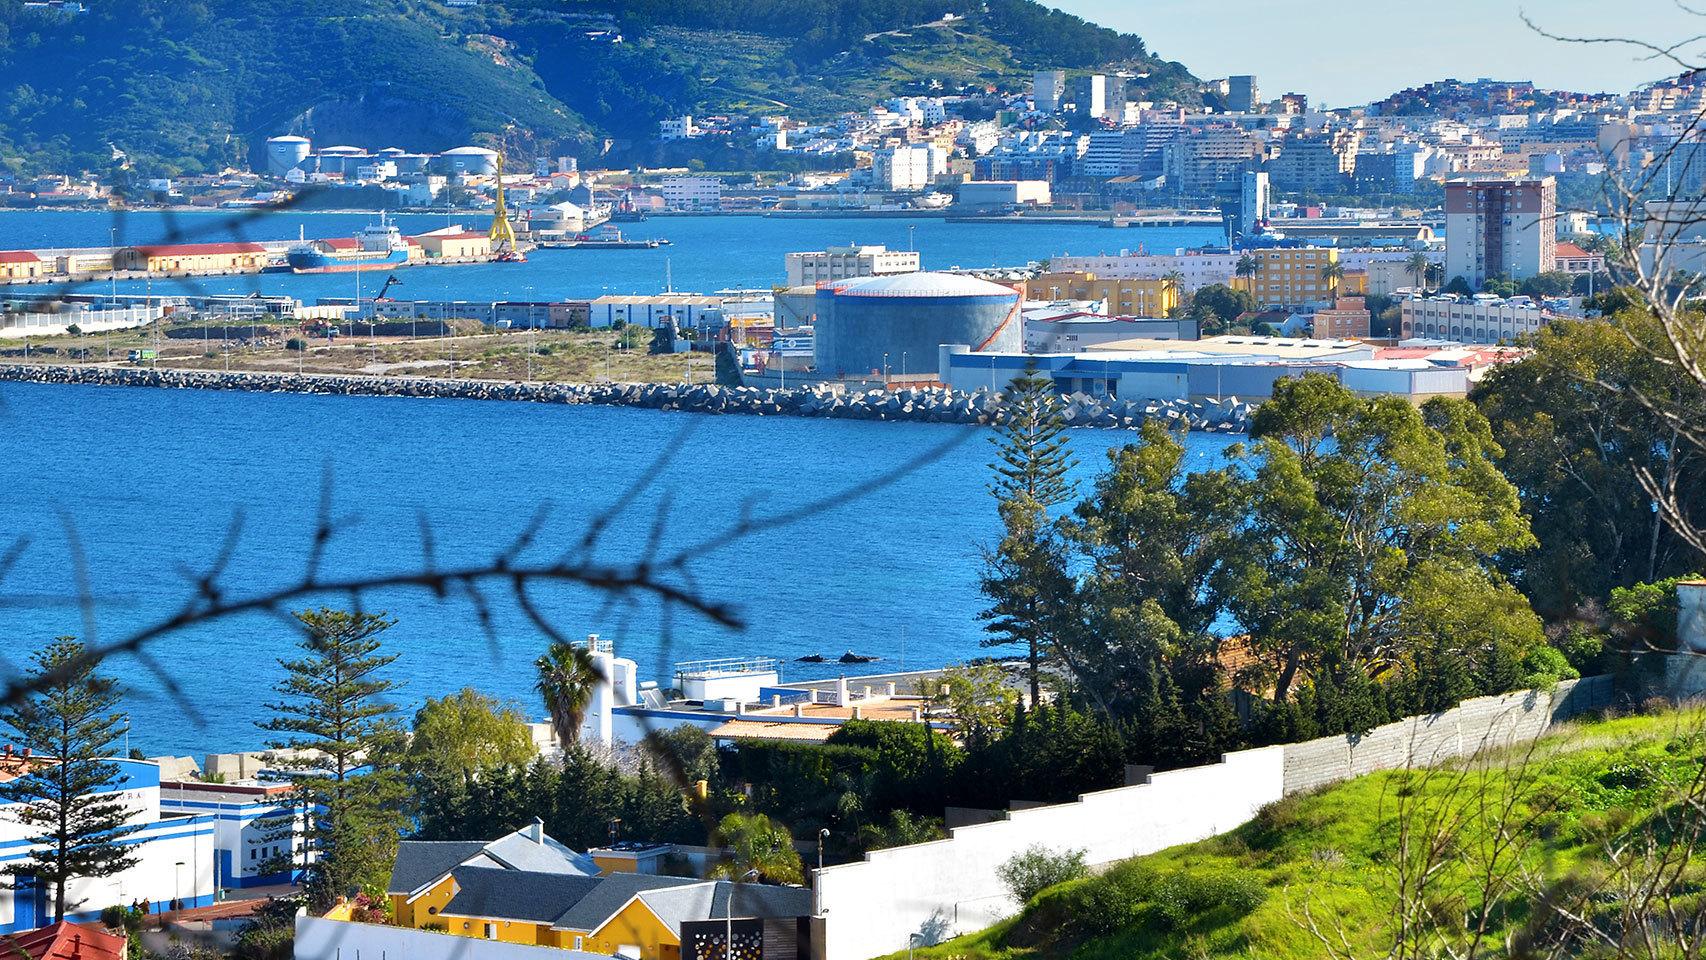 Vista aérea de Ceuta.